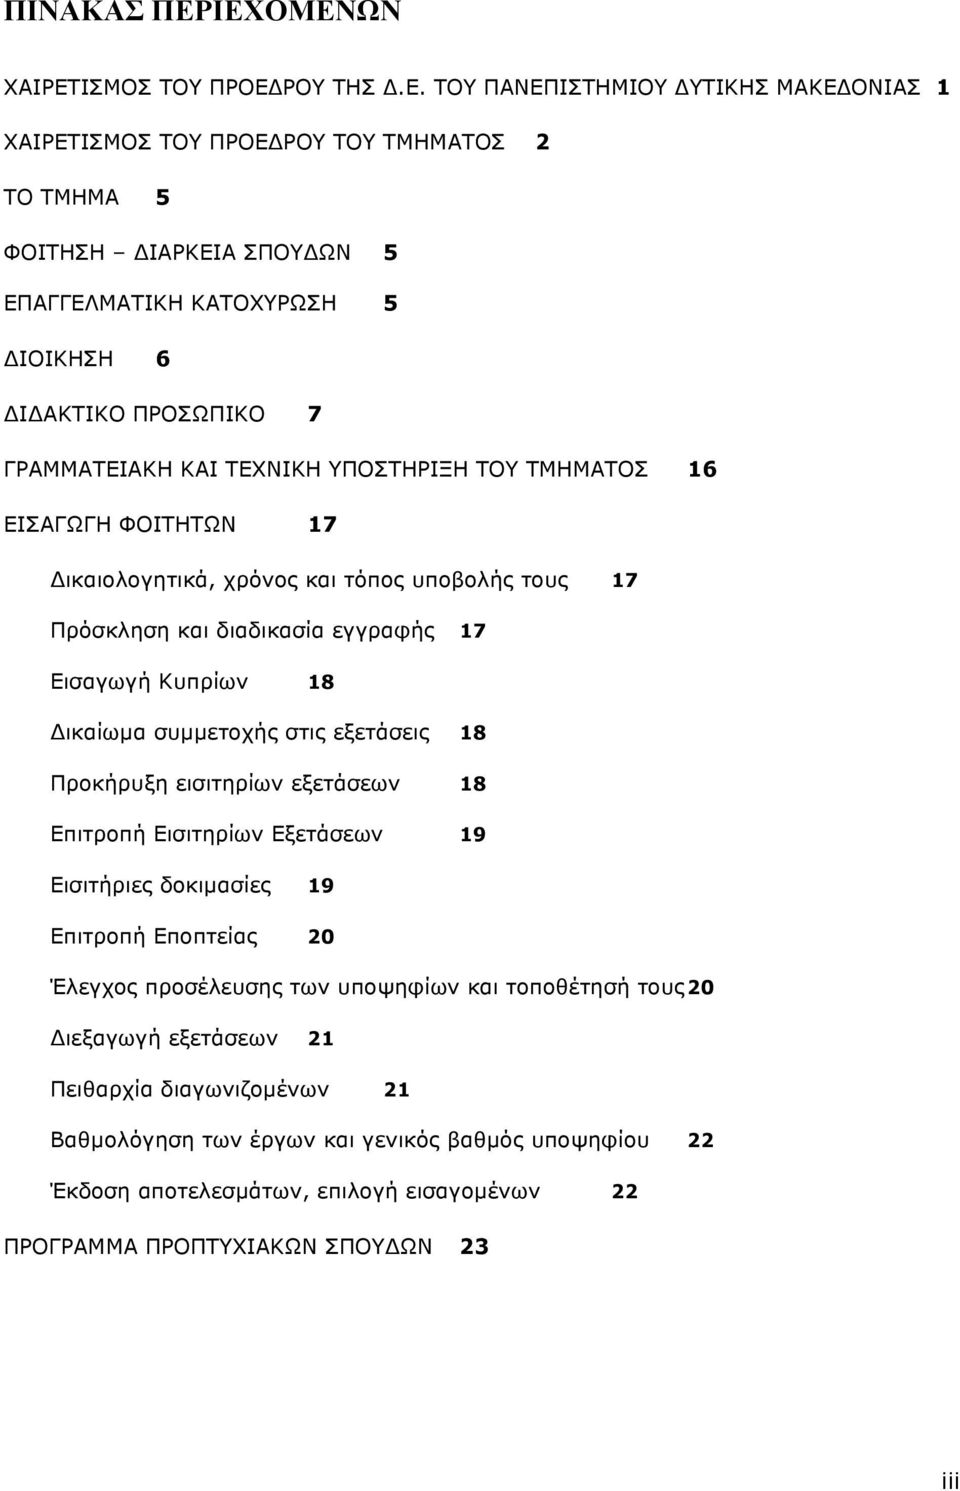 ΑΚΤΙΚΟ ΠΡΟΣΩΠΙΚΟ 7 ΓΡΑΜΜΑΤΕΙΑΚΗ ΚΑΙ ΤΕΧΝΙΚΗ ΥΠΟΣΤΗΡΙΞΗ ΤΟΥ ΤΜΗΜΑΤΟΣ 16 ΕΙΣΑΓΩΓΗ ΦΟΙΤΗΤΩΝ 17 ικαιολογητικά, χρόνος και τόπος υποβολής τους 17 Πρόσκληση και διαδικασία εγγραφής 17 Εισαγωγή Κυπρίων 18